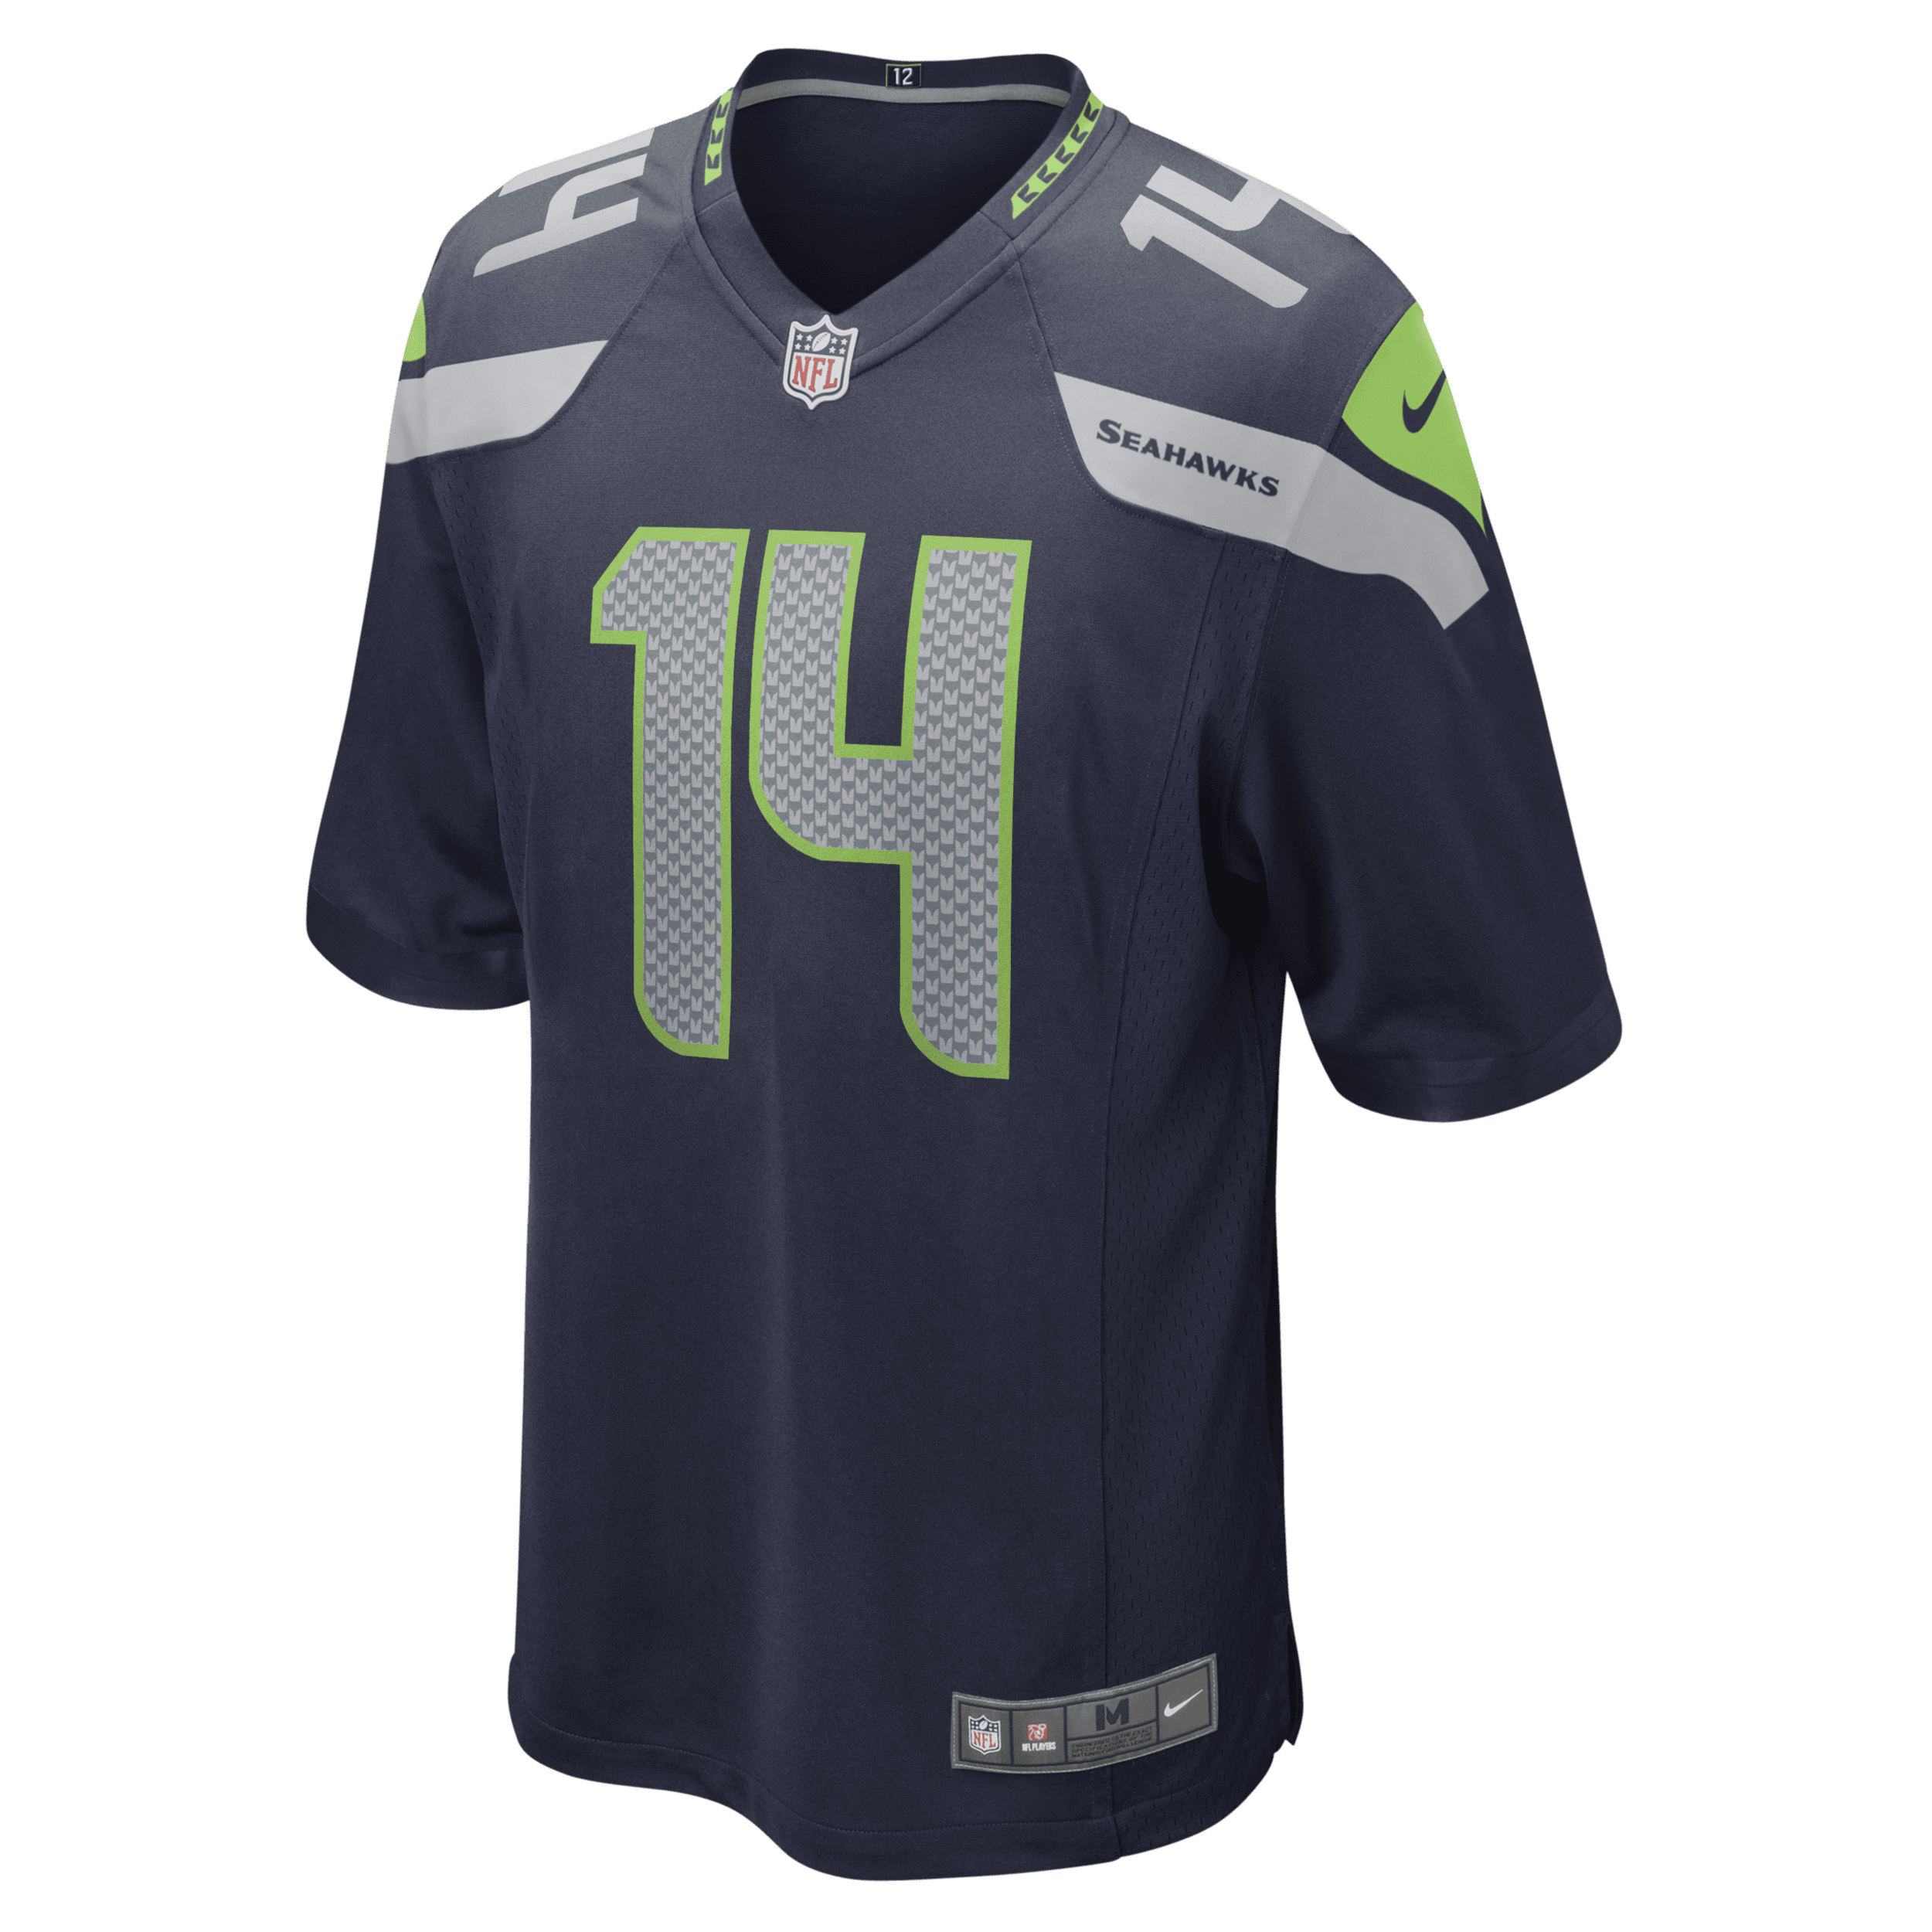 Nike Maglia da partita da football americano Seattle Seahawks (DK Metcalf) NFL – Uomo - Blu